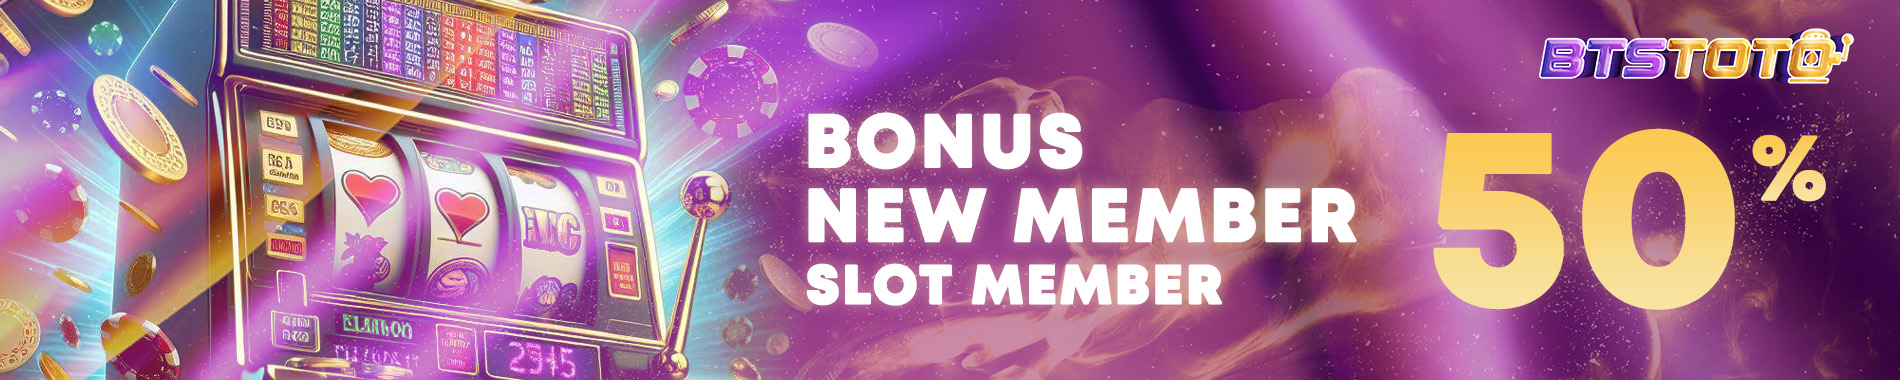 bonus new member baru slot online 50%